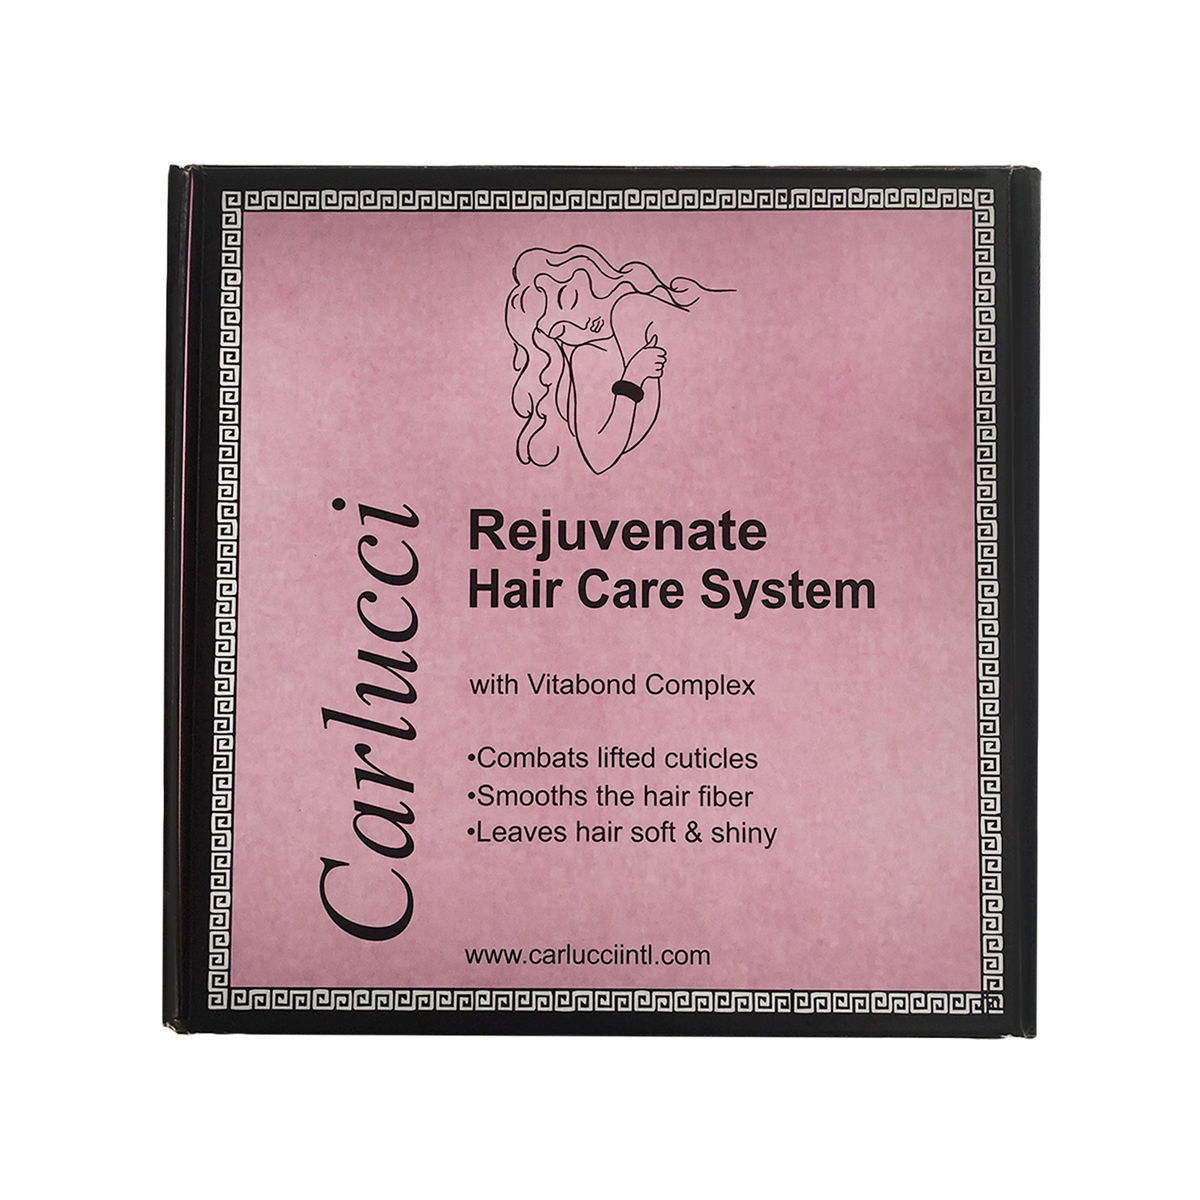 Rejuvenate Hair Care System, featuring our unique Vitabond Complex